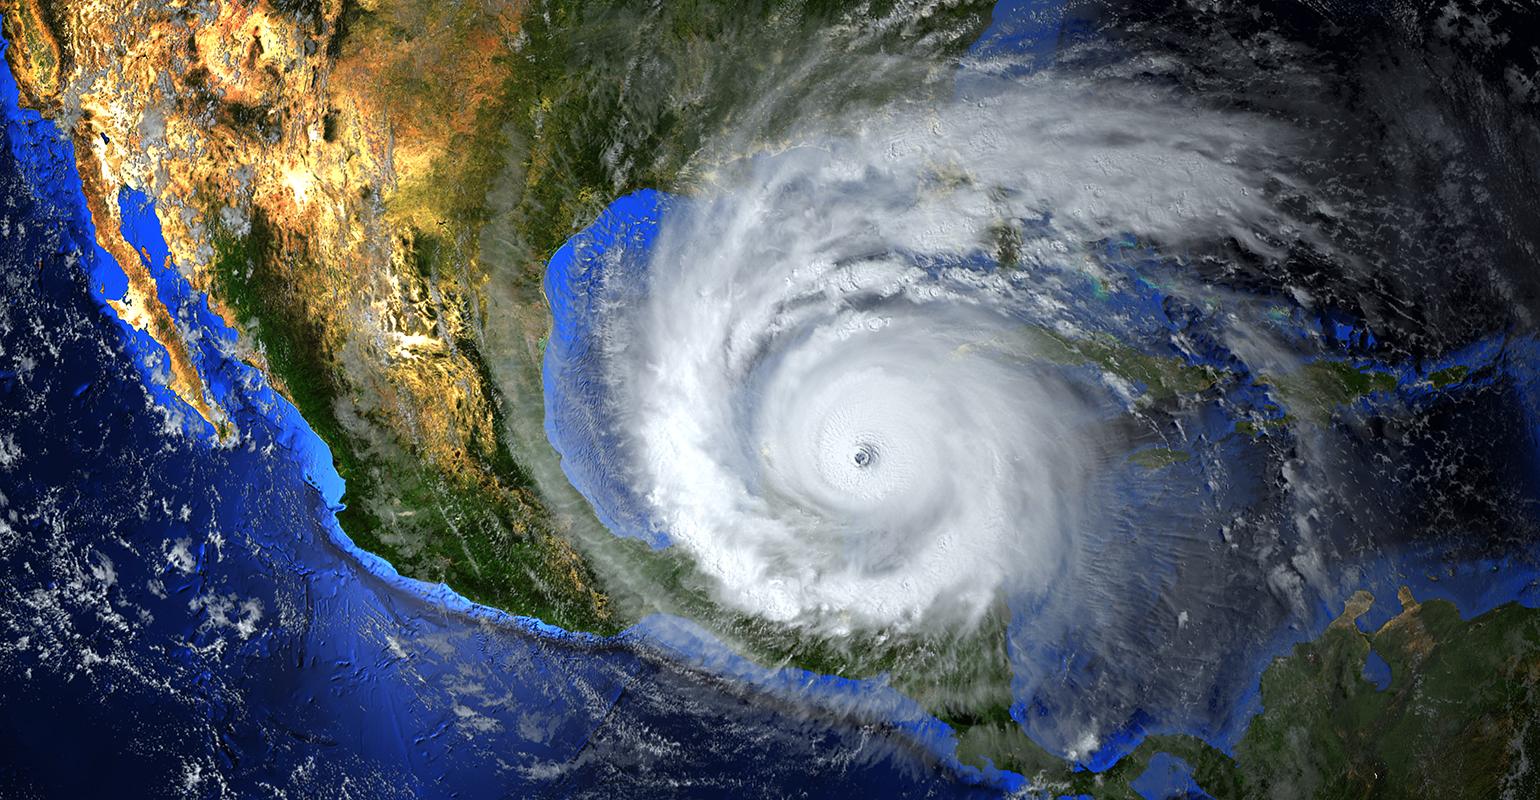 Ouragan-US-Satellite-View-Mike-Mareen-AdobeStock_249818599-FTR.jpg